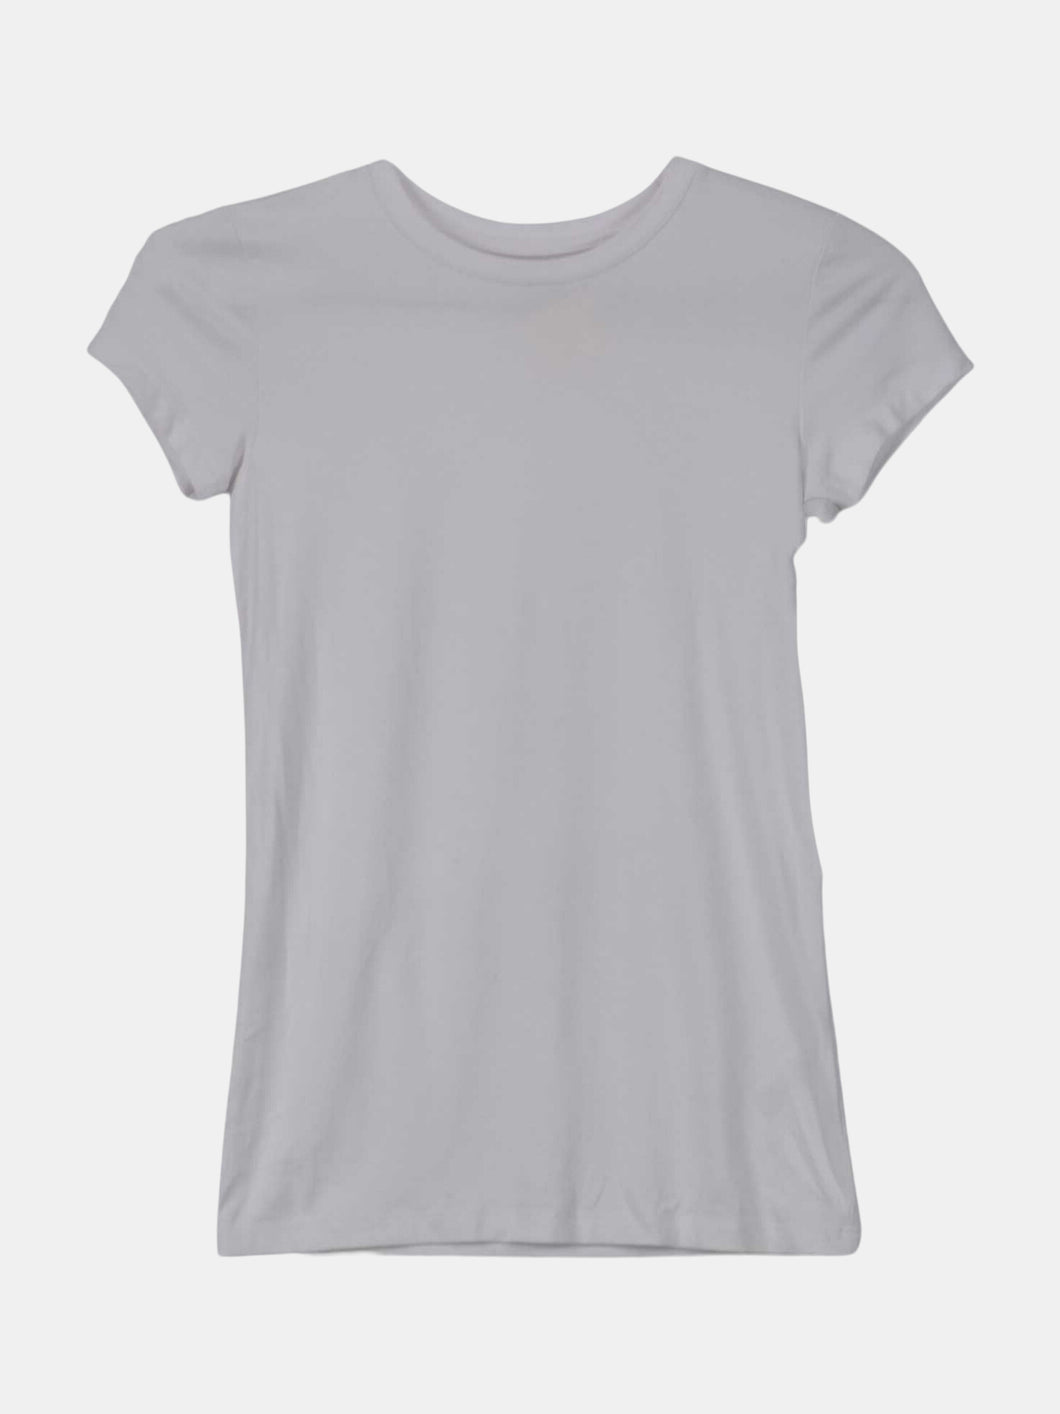 Lagence Women's White Ressi Tee Graphic T-Shirt